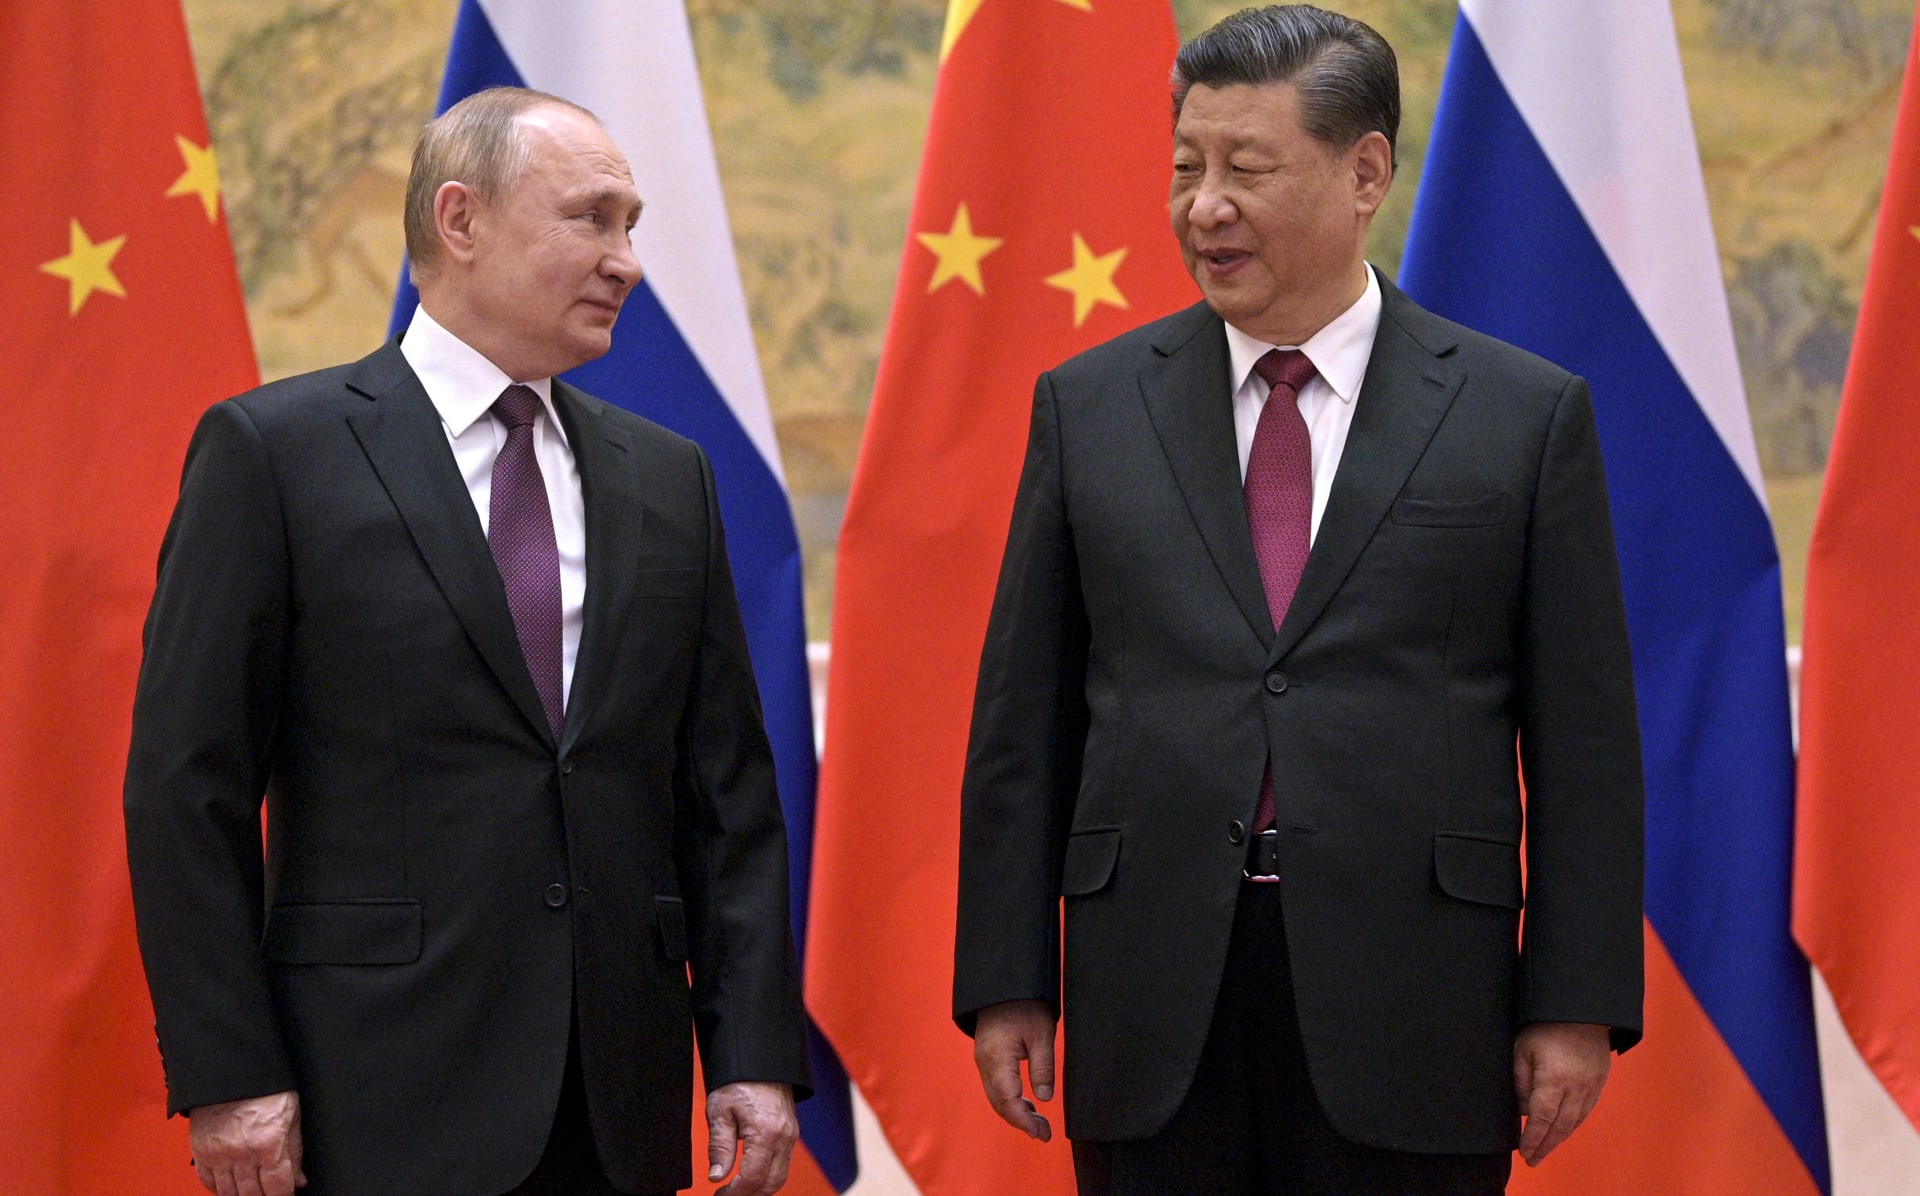 Vladimiru Putinovi se zřejmě nepodařilo dojednat neomezené partnerství s Čínou.